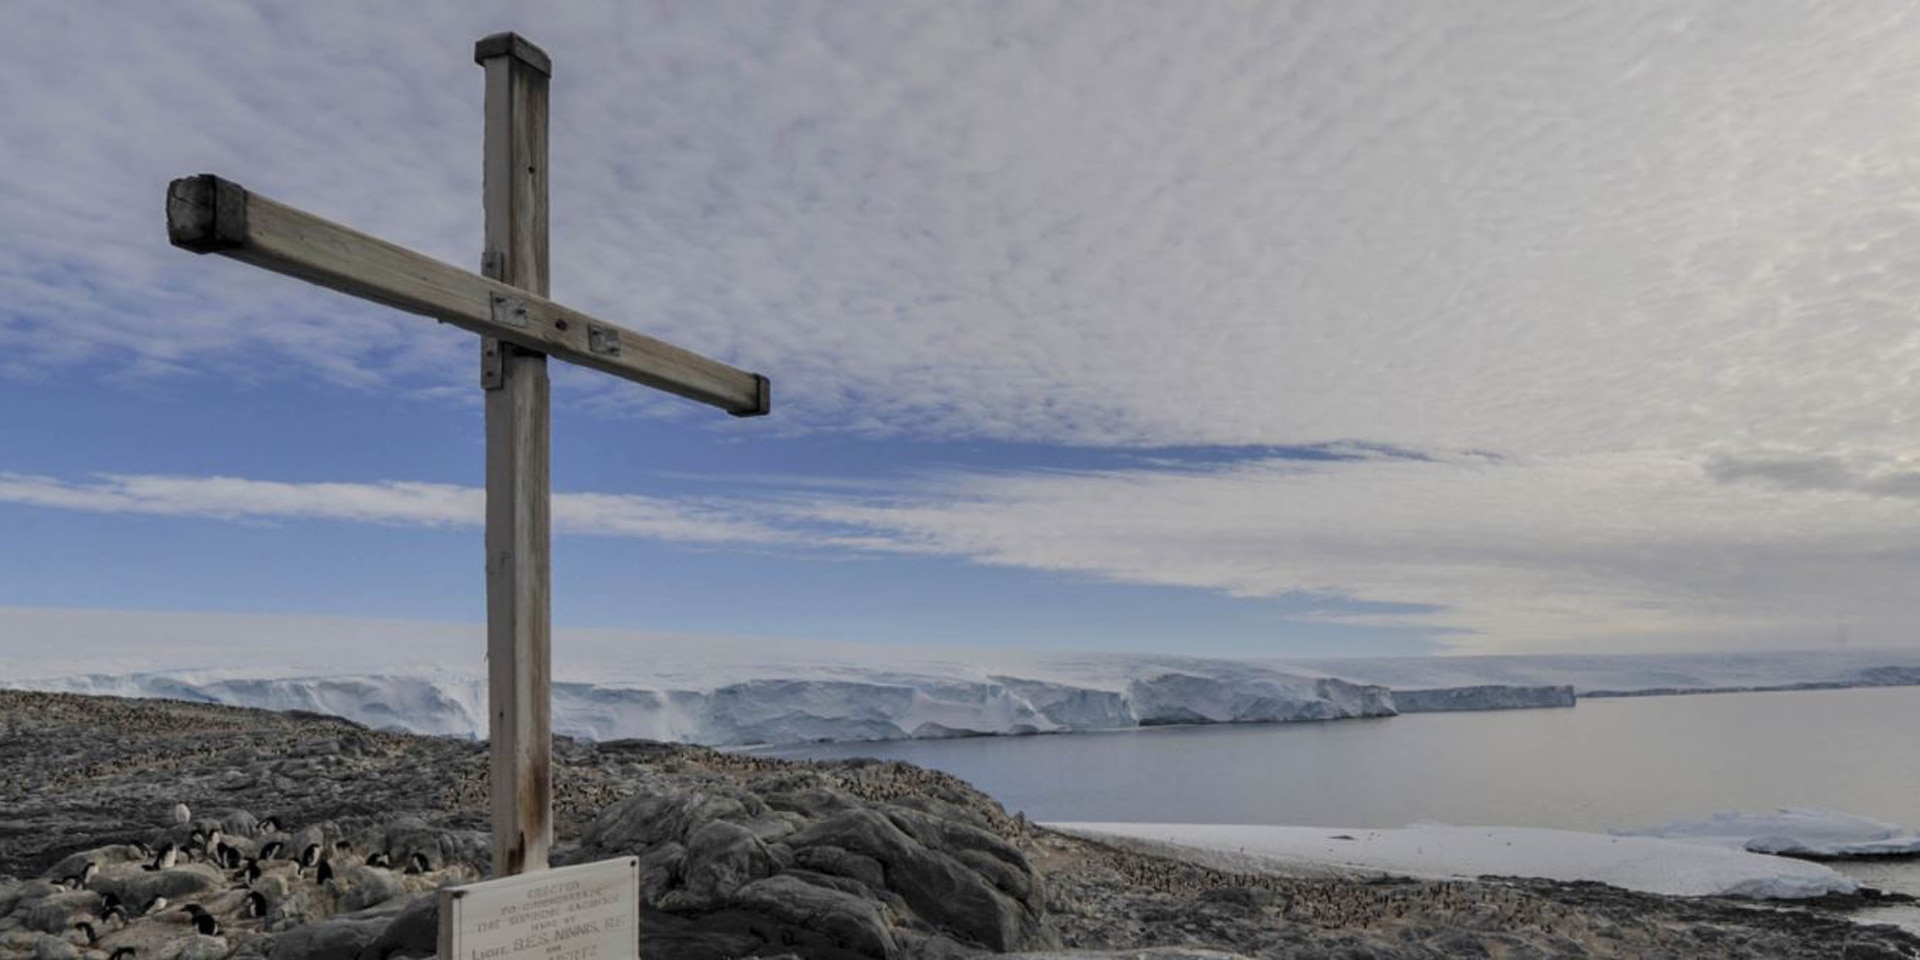 Croce di legno in memoria di Belgrave Ninnis e Xavier Mertz a Capo Denison, Antartide.